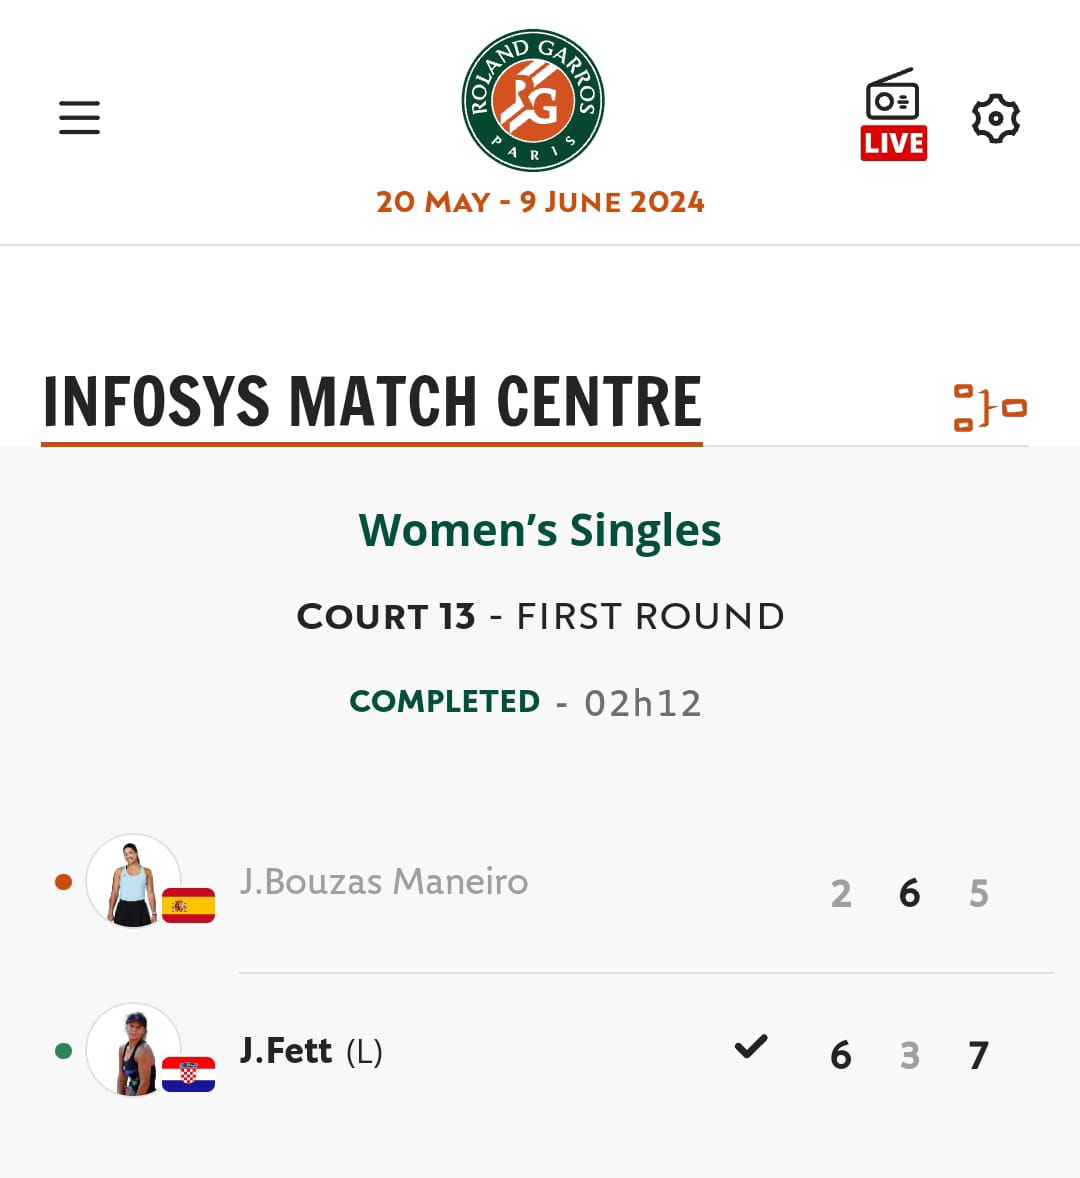 Fett eliminou a Bouzas na 1a rolda de Roland Garros, cun 6-2 3-6 7-5. A arousá, loitadora como é habitual, estivo preto da vitoria nun longo partido no que houbo un parón por mor da choiva no terceiro set, cando o marcador estaba da súa parte cun 4-1. fgtenis.net/gl/jessica-bou…